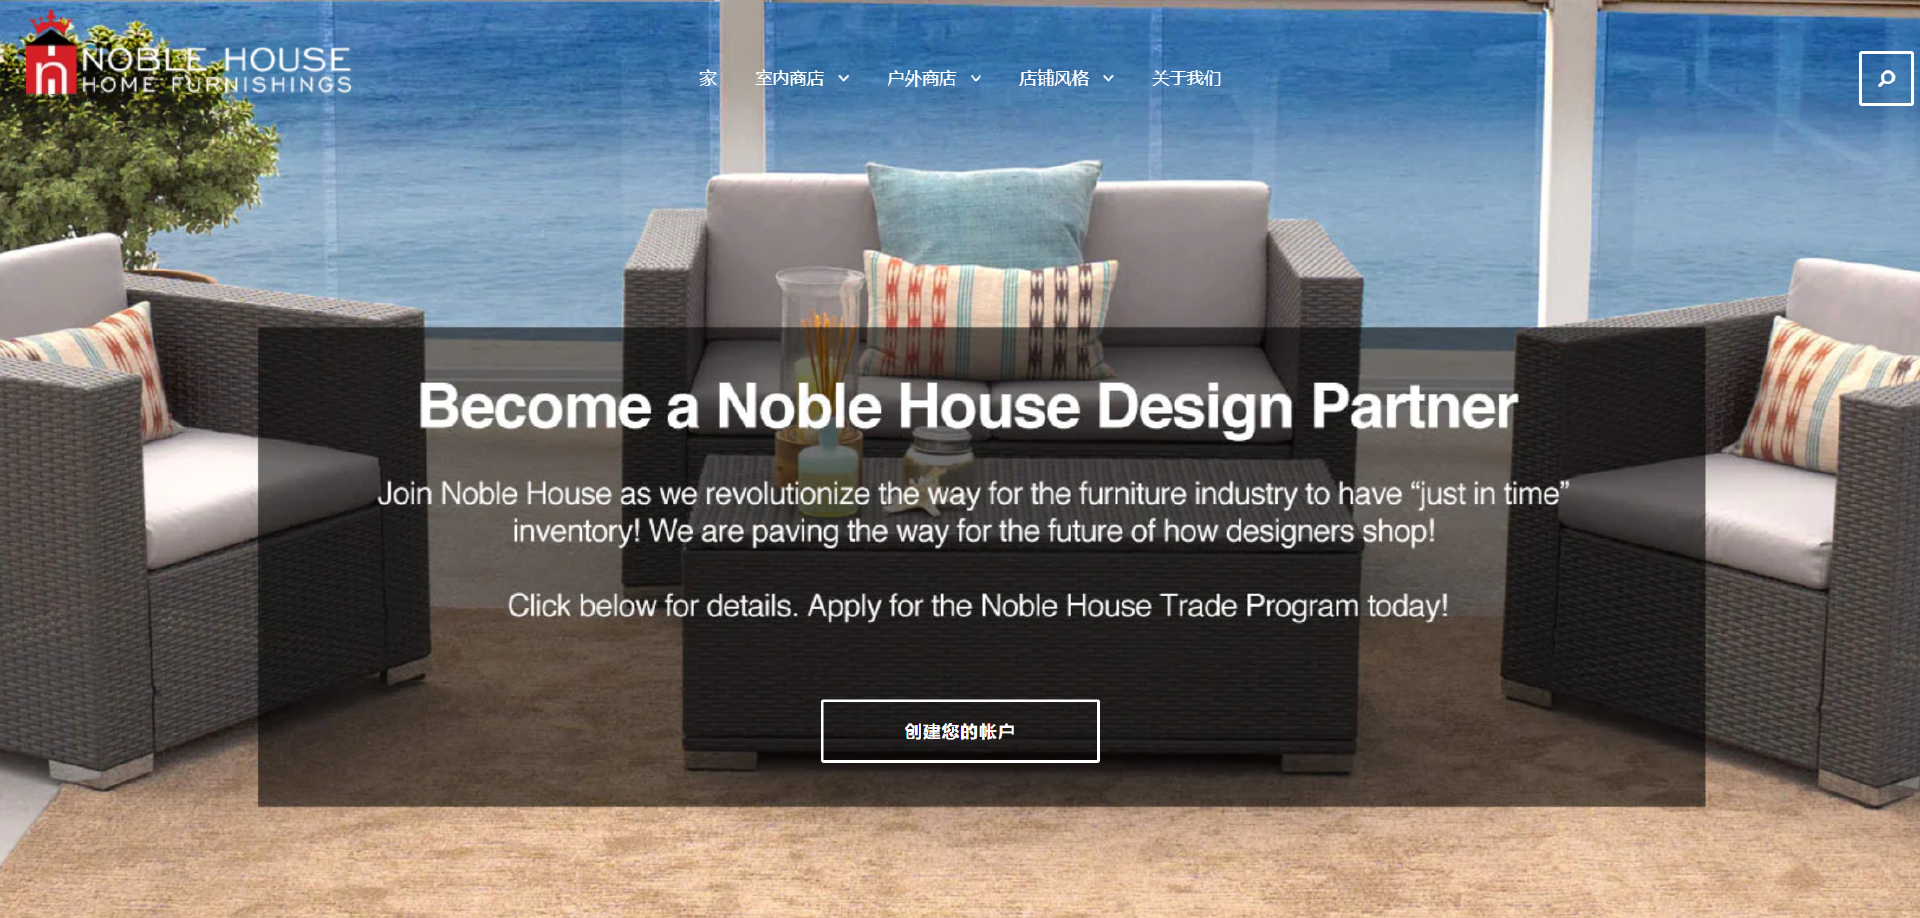 豪华家具品牌Noble House申请破产